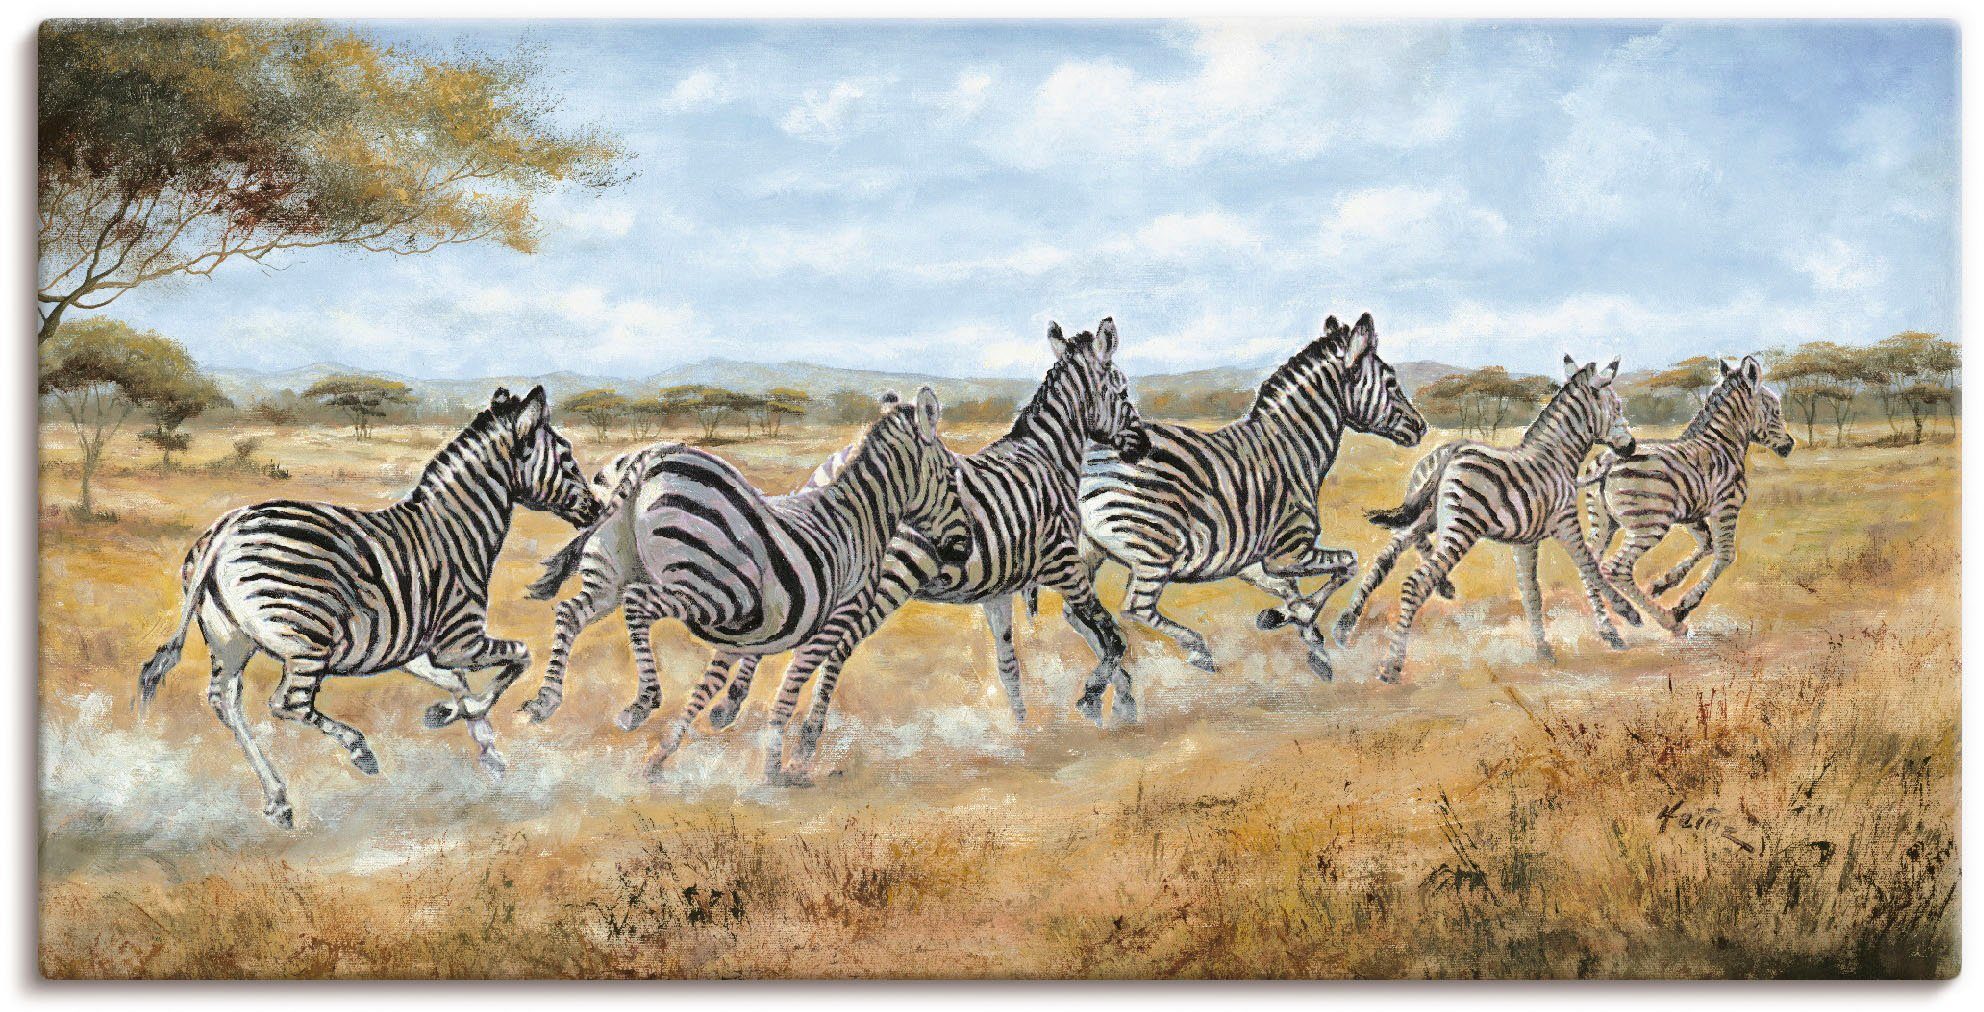 Artland Artprint Lopende zebra’s in vele afmetingen & productsoorten - artprint van aluminium / artprint voor buiten, artprint op linnen, poster, muursticker / wandfolie ook geschi